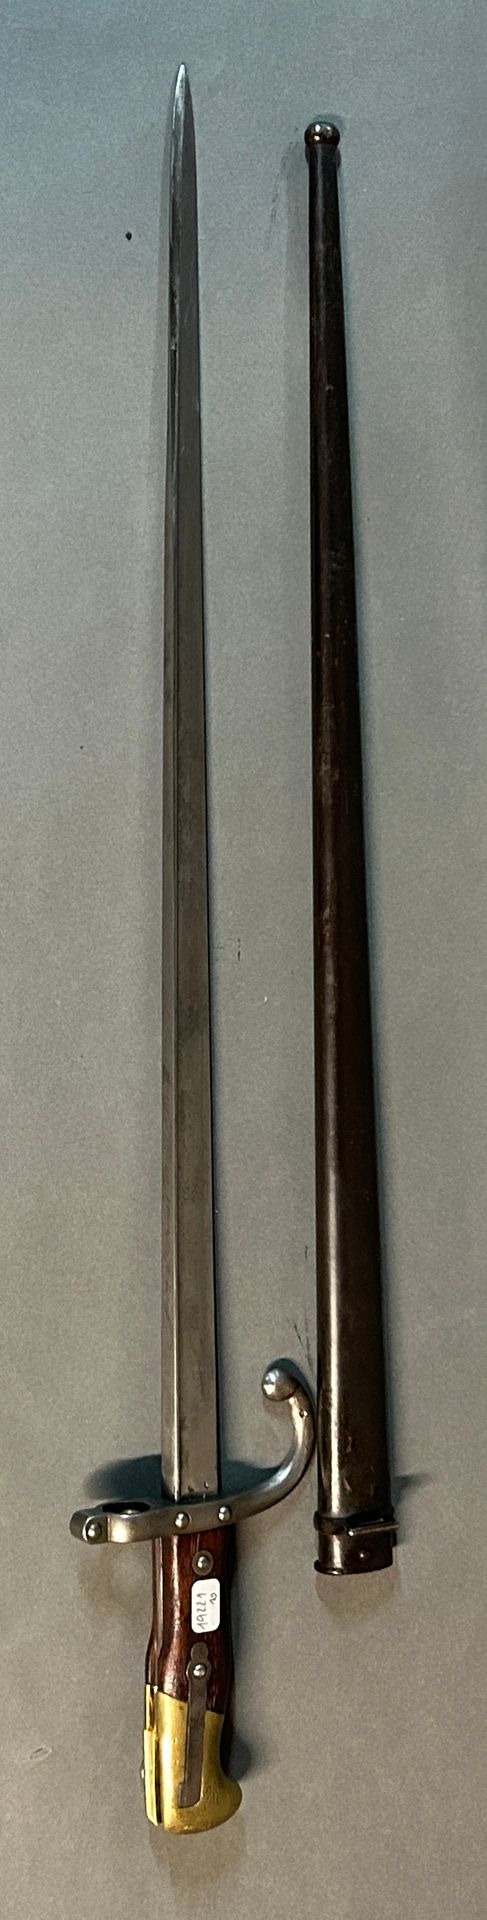 Null Baionetta modello 1874 chiamata Gras.

Pomo in ottone, due piastre in legno&hellip;